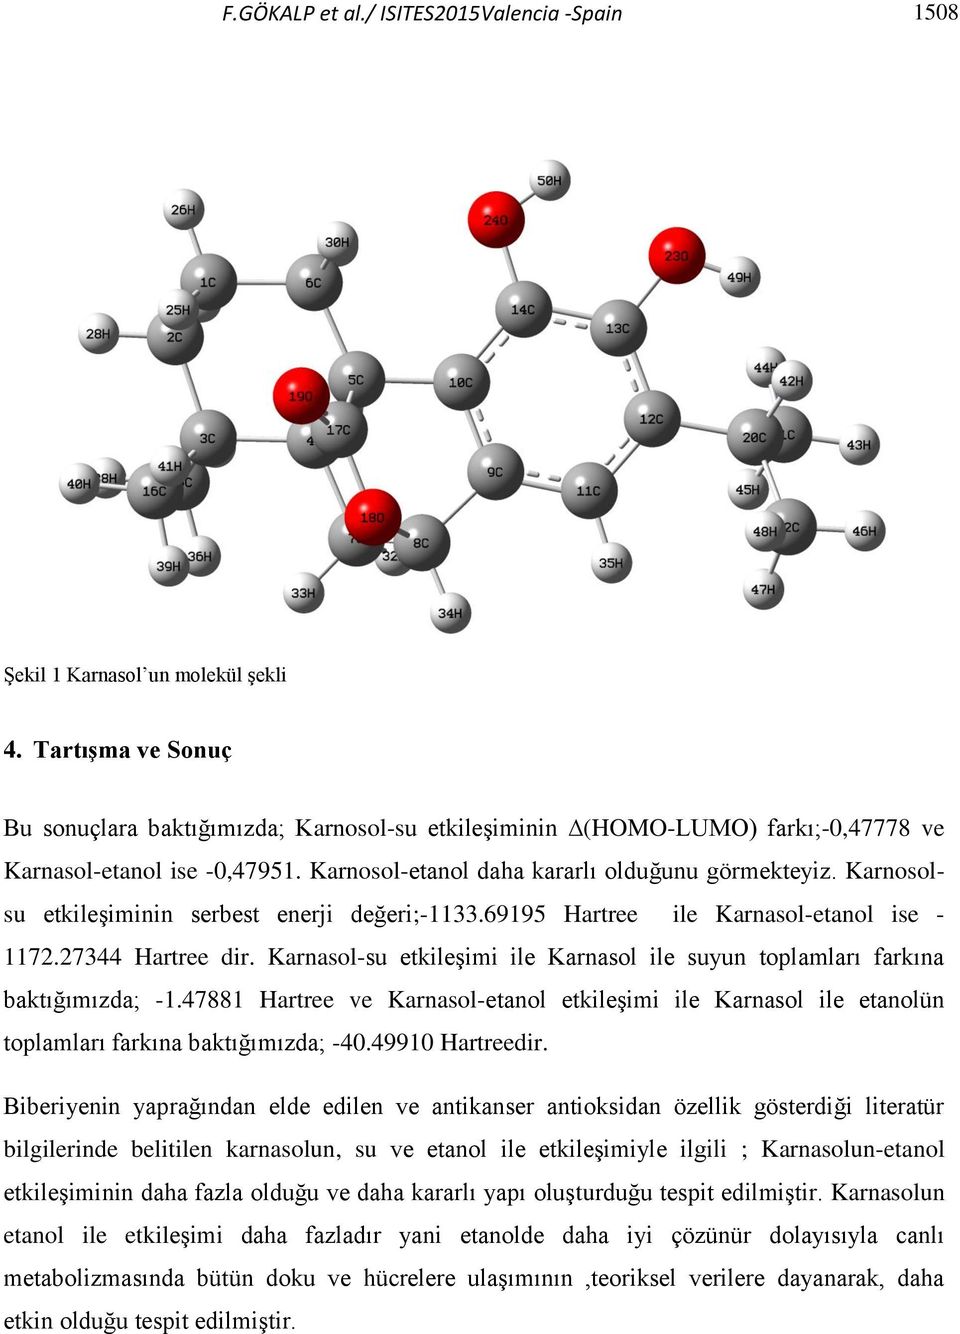 Karnosolsu etkileşiminin serbest enerji değeri;-1133.69195 Hartree ile Karnasol-etanol ise - 1172.27344 Hartree dir. Karnasol-su etkileşimi ile Karnasol ile suyun toplamları farkına baktığımızda; -1.